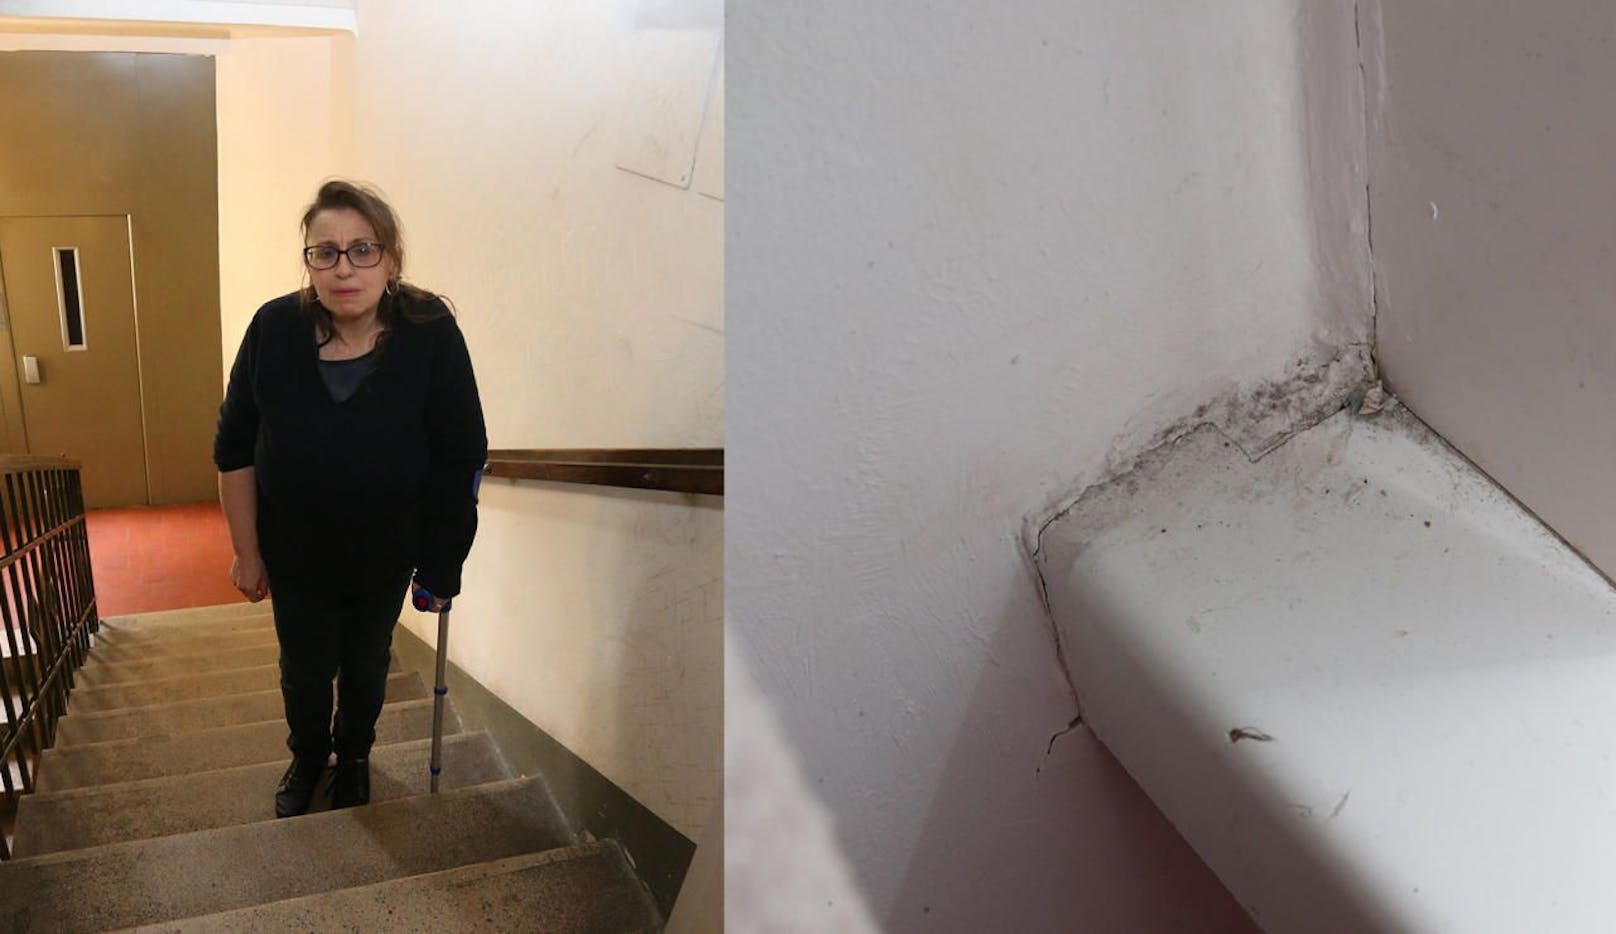 Ingeborg B. muss zwölf Stufen überwinden, während in der kleinen Wohnung der Schimmel wartet.